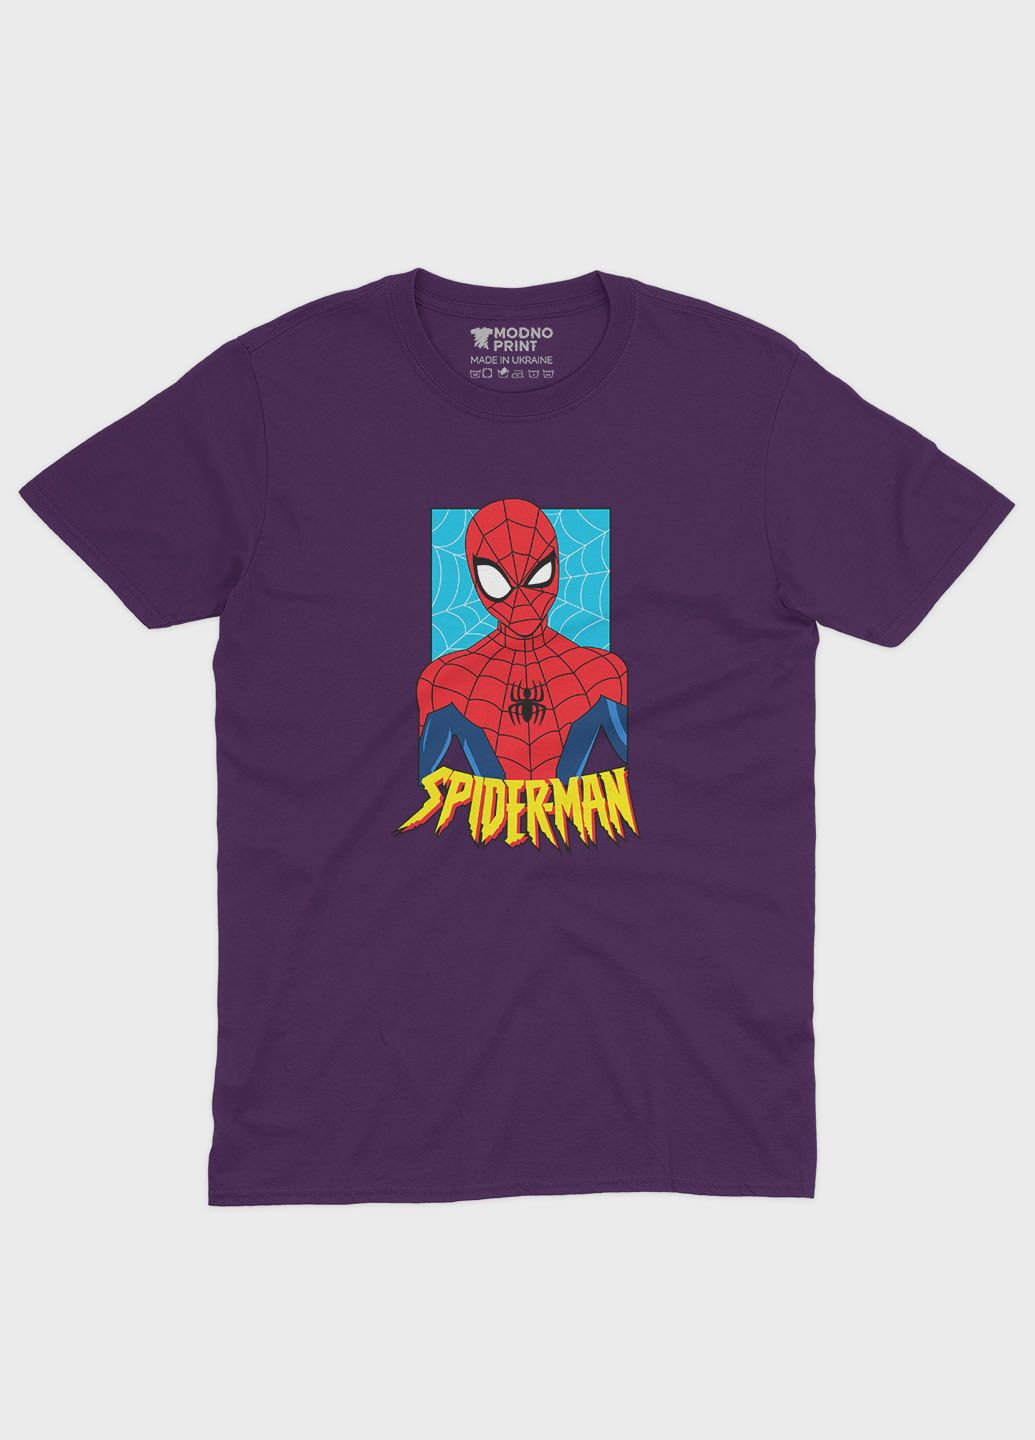 Фіолетова демісезонна футболка для дівчинки з принтом супергероя - людина-павук (ts001-1-dby-006-014-037-g) Modno